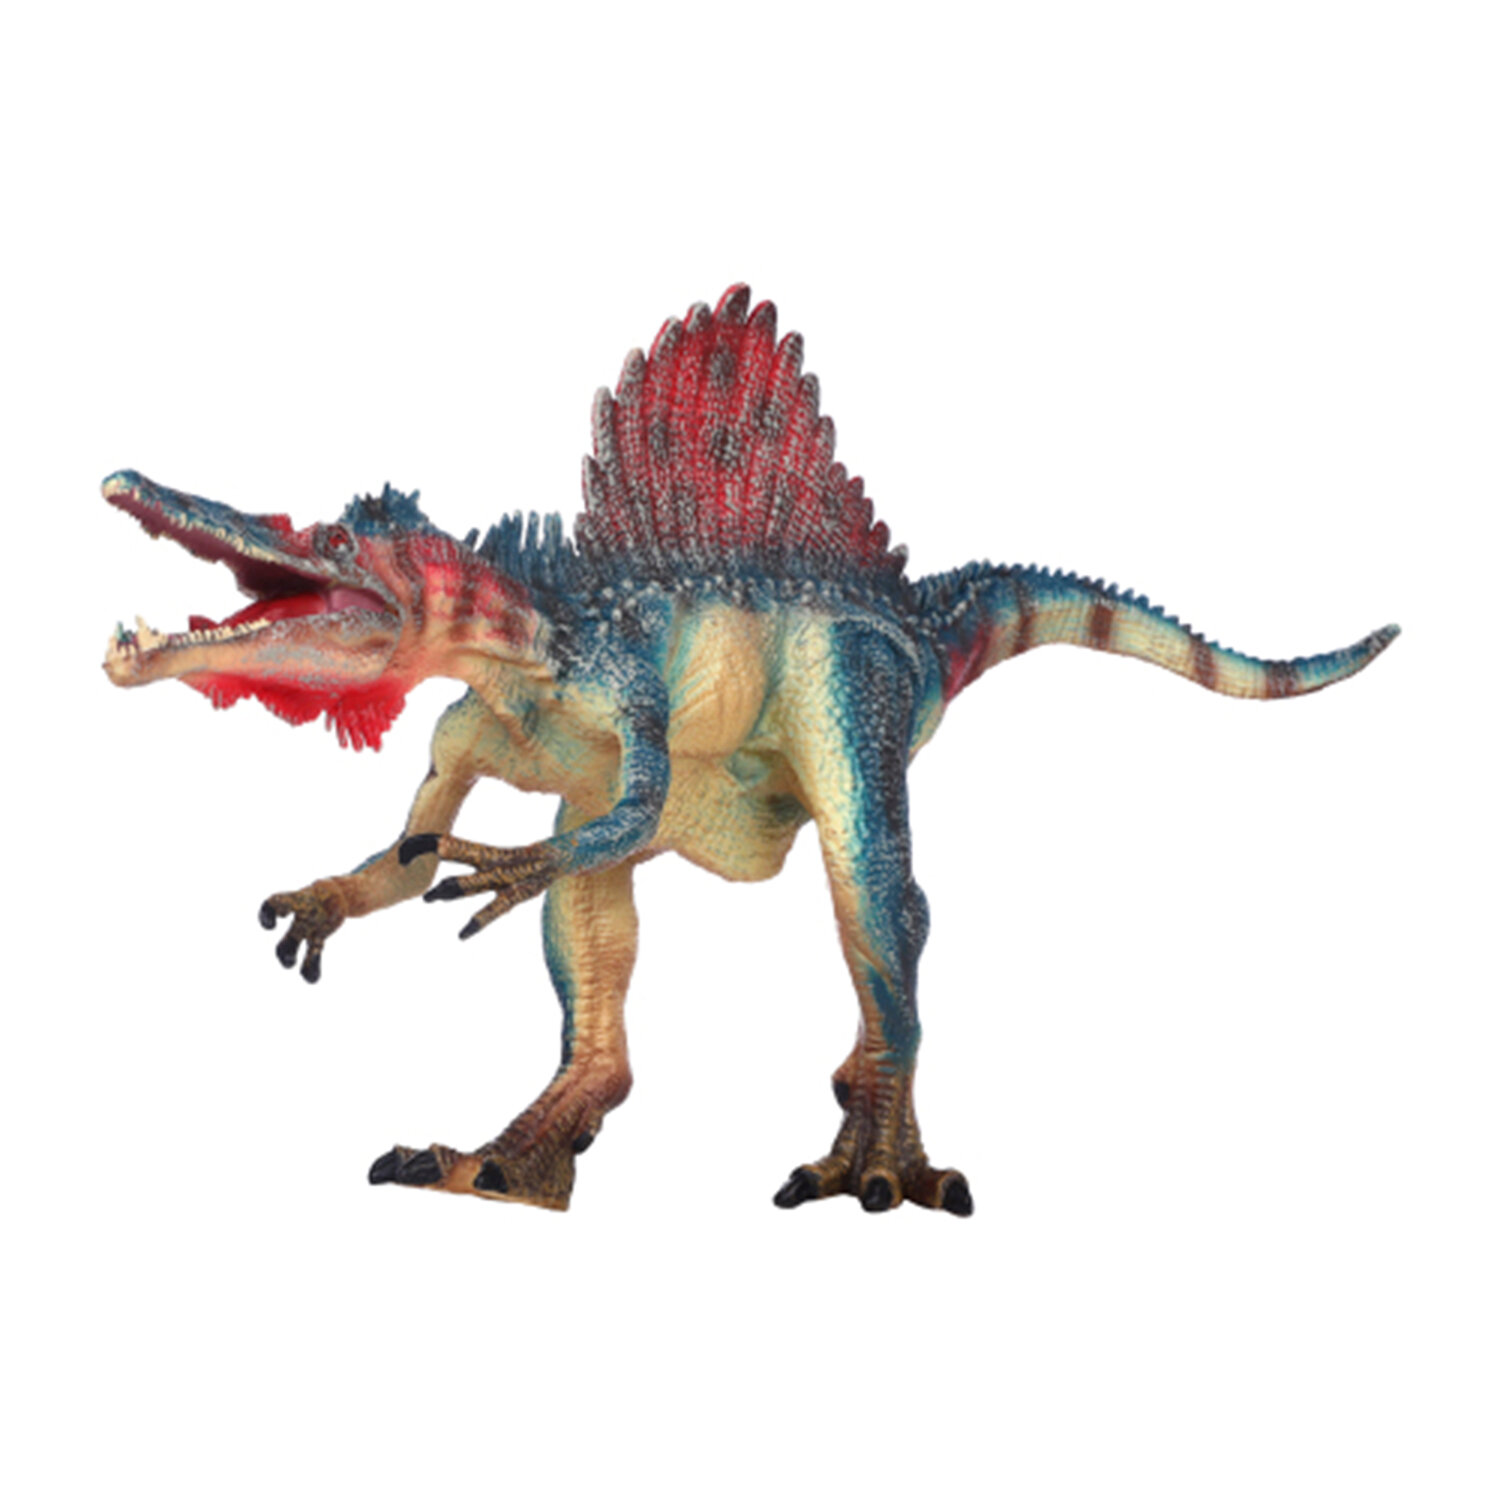 Игрушка динозавр серии "Мир динозавров" - Фигурка Спинозавр